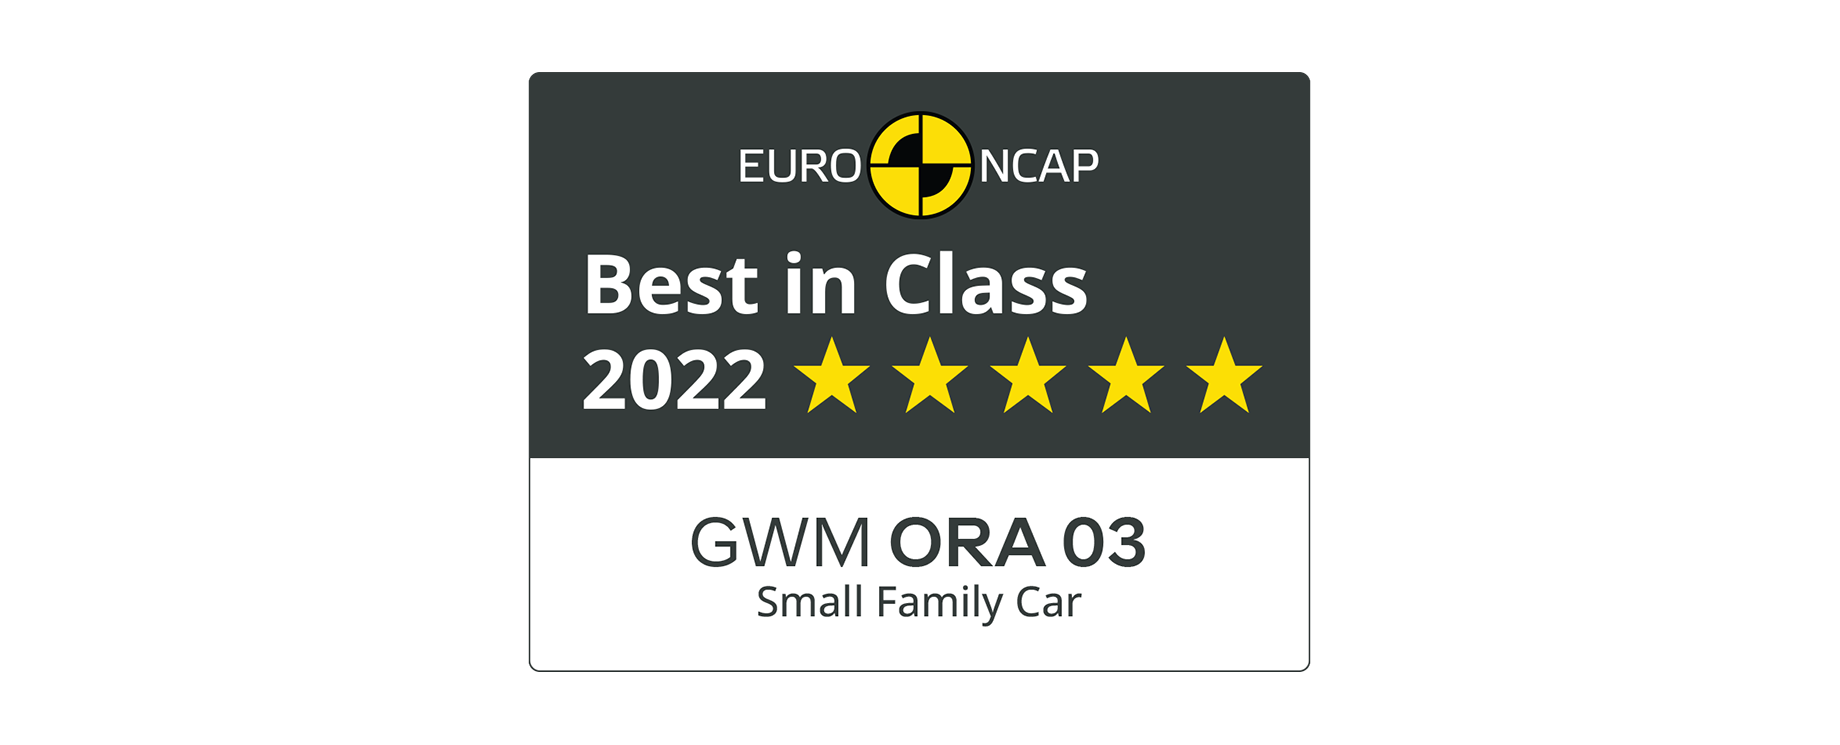 euro ncap logo som visar att ora blev bäst i klassen med fem stjärnor inom kategorin små familjebilar år 2022